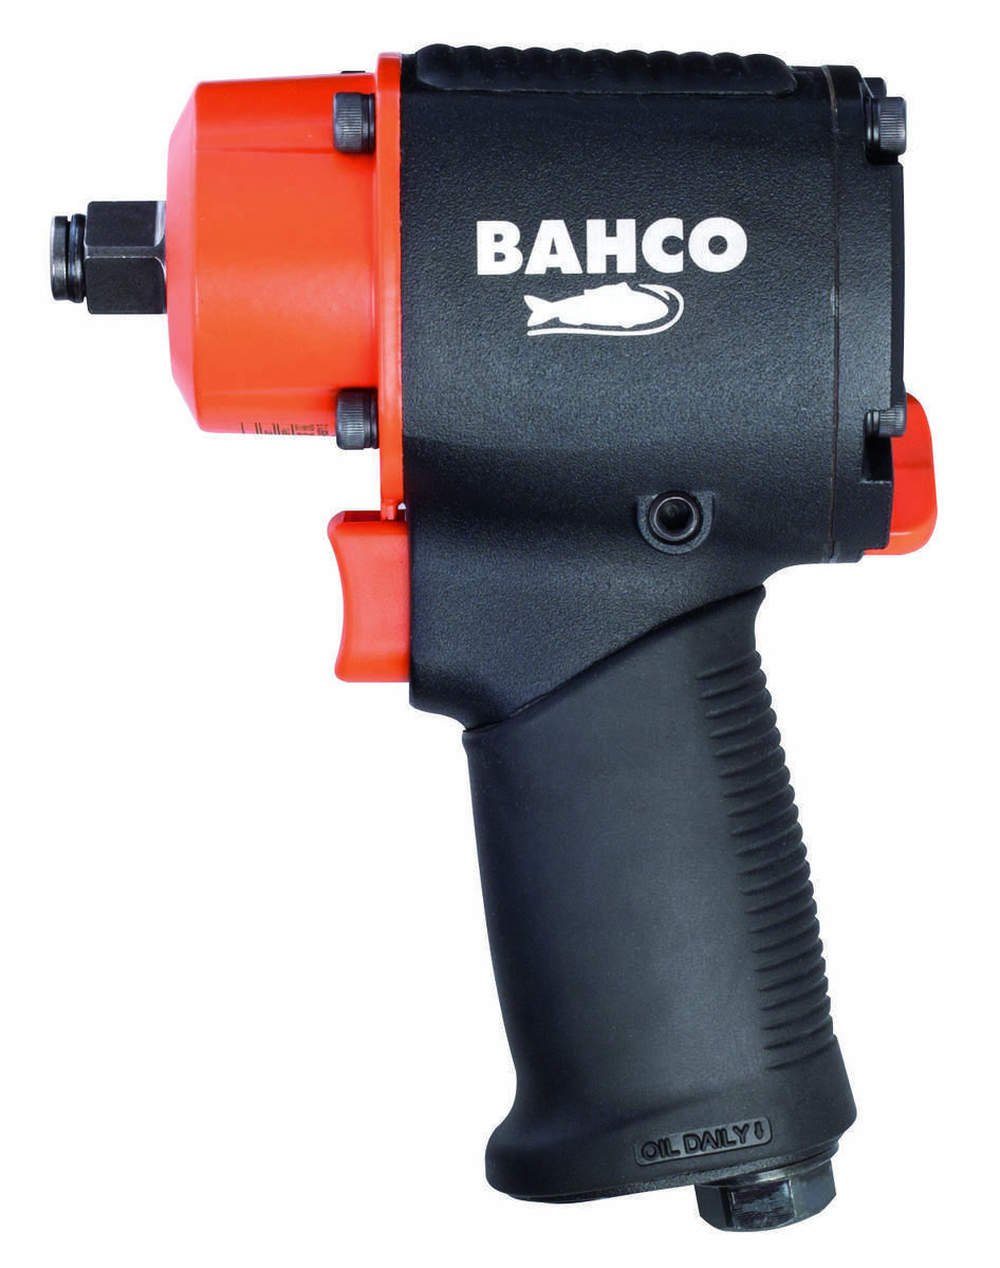 BAHCO Druckluft-Schlagschrauber BPC813, 10000 U/min, 678 Nm, (Solo), Doppelhammer-Schlagwerk, Rutschfester Gummigriff